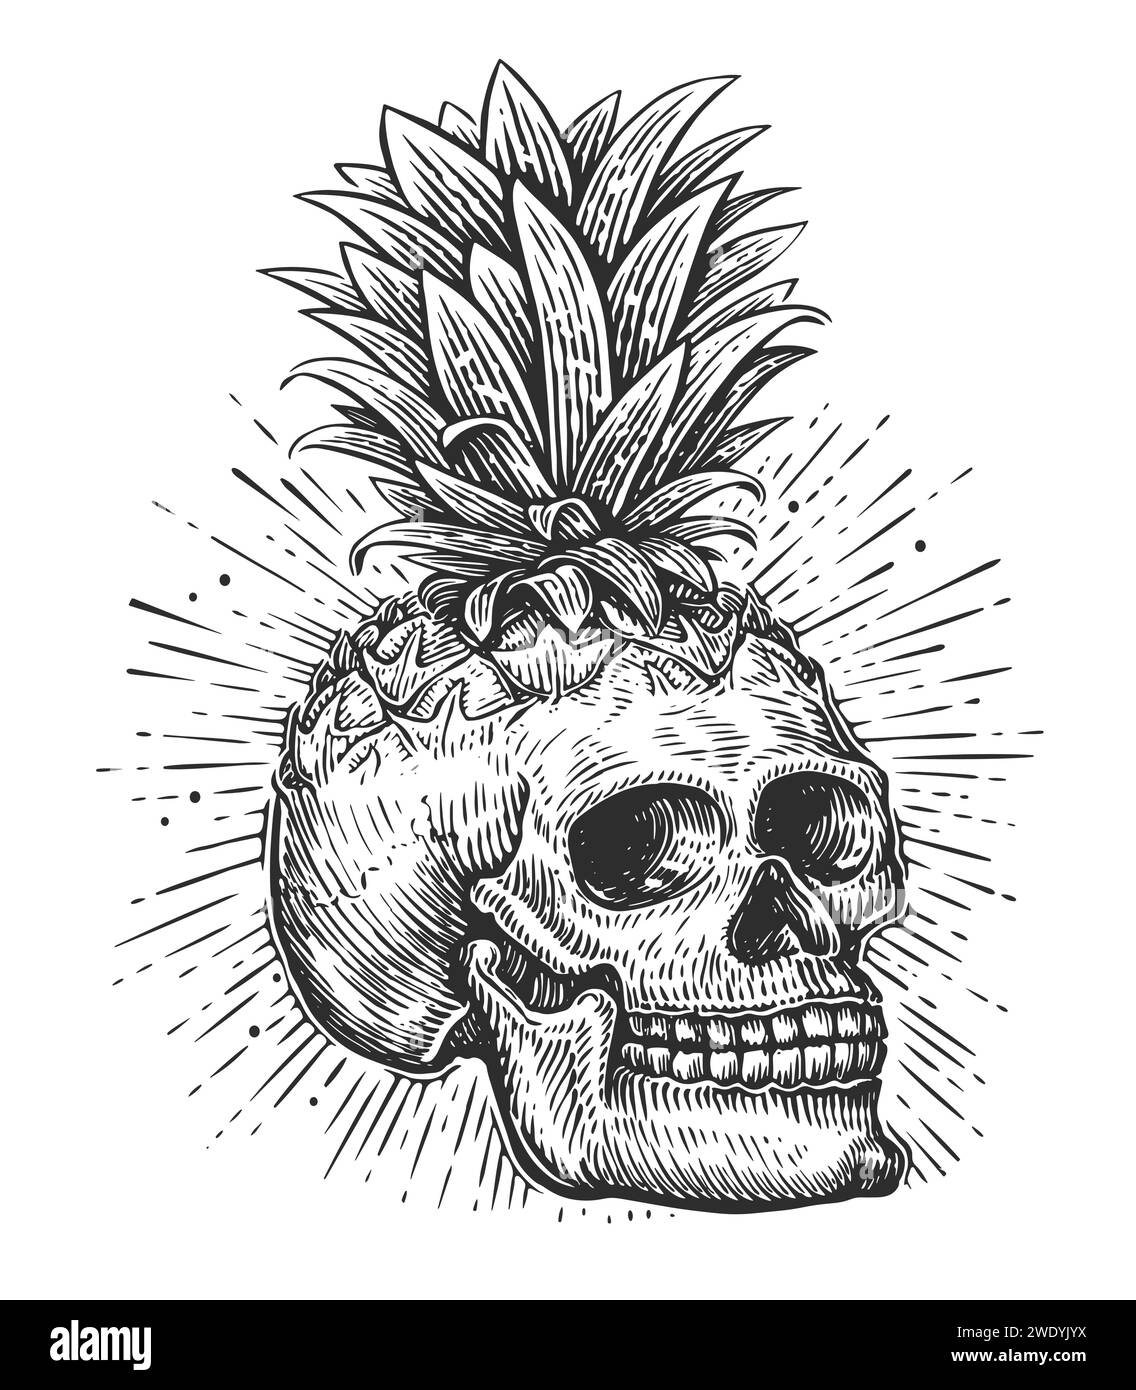 Cranio umano e foglie. Testa scheletrica disegnata a mano in stile vintage. Illustrazione del vettore di schizzo Illustrazione Vettoriale